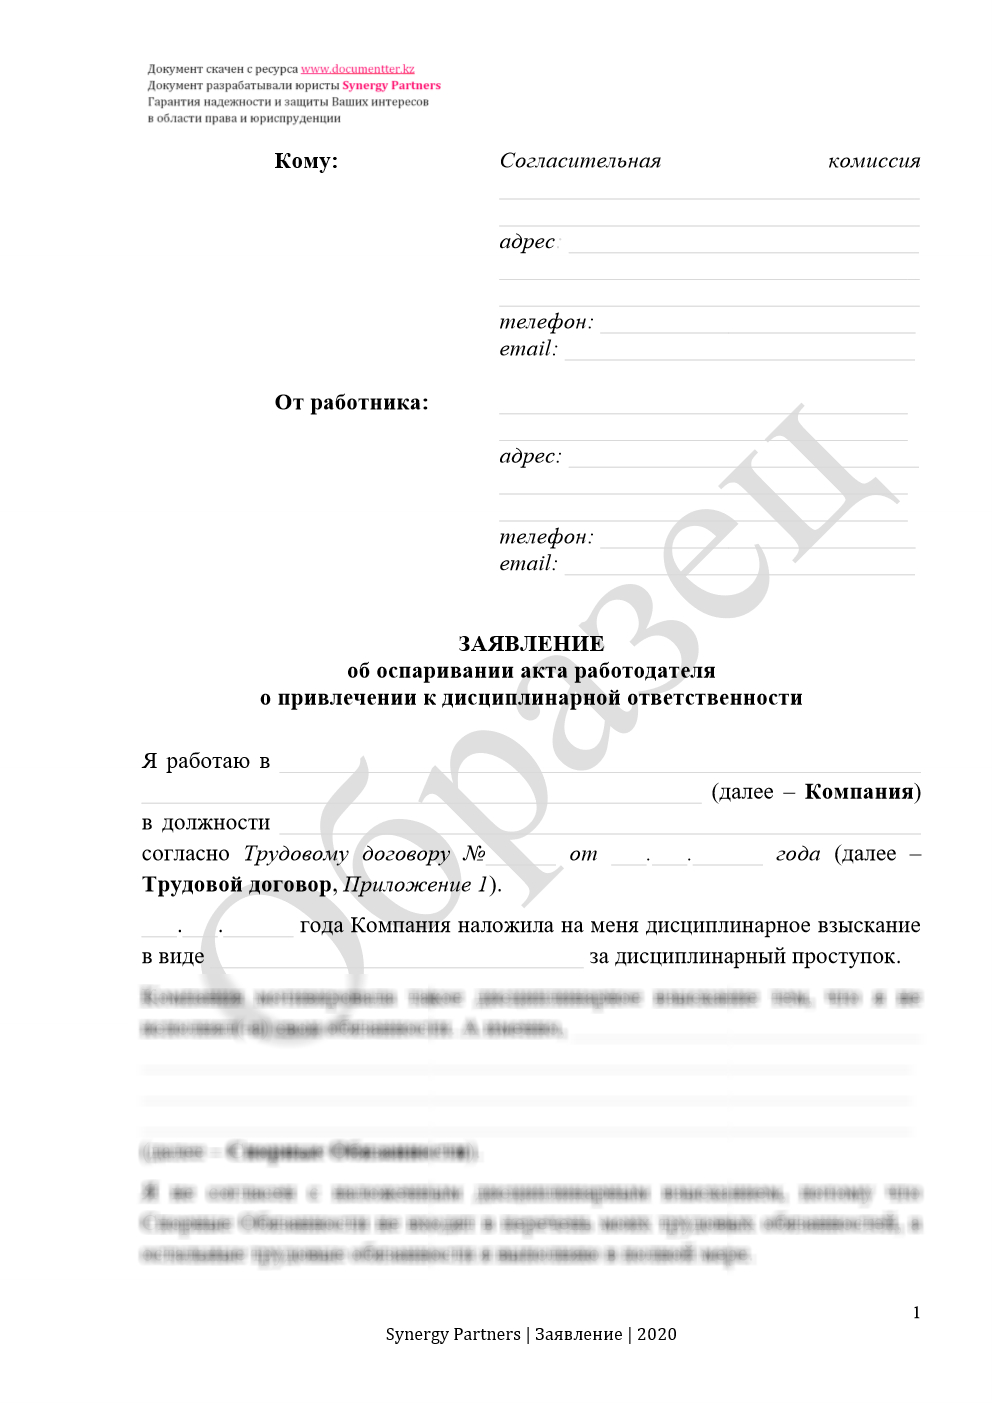 Заявление в согласительную комиссию, если незаконно наложили дисциплинарное взыскание 16 | documentter.kz в Казахстане 